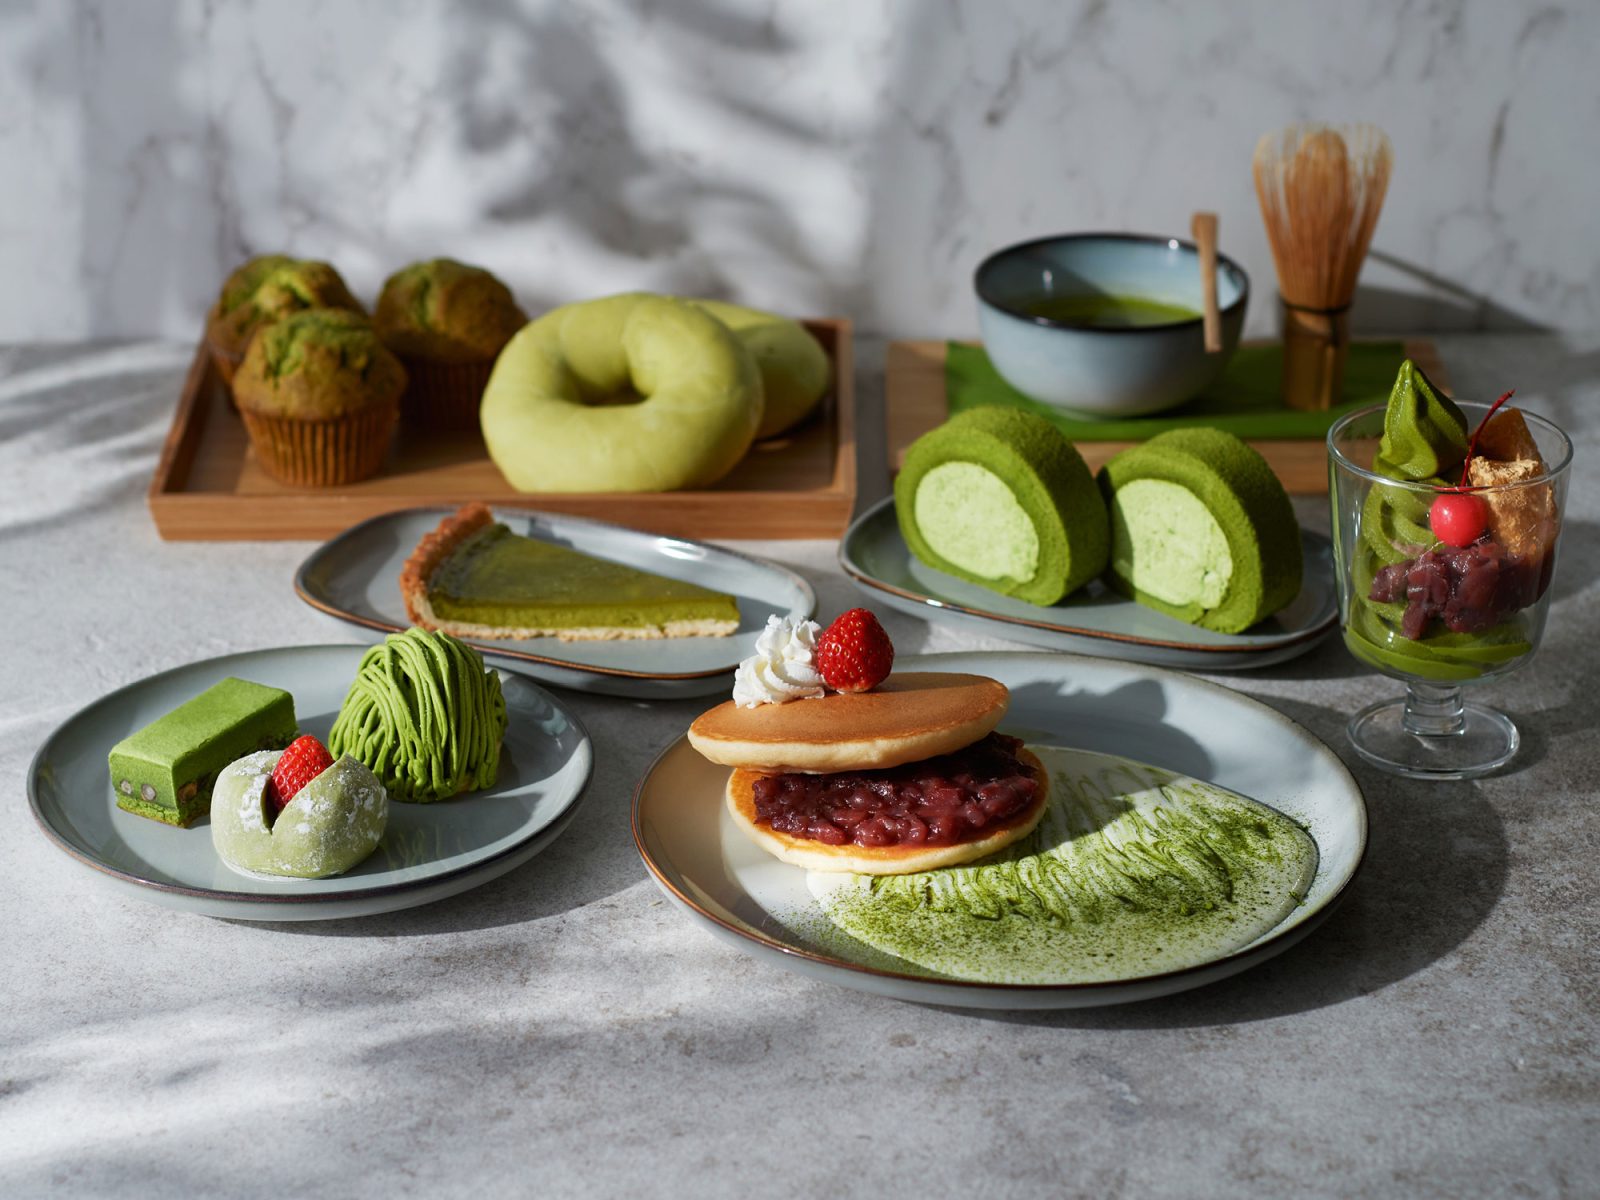 Uppdukat bord med gröna sötsaker, från donuts till tårtbitar, samt en traditonell matcha-visp och skål med grönt matcha-te.